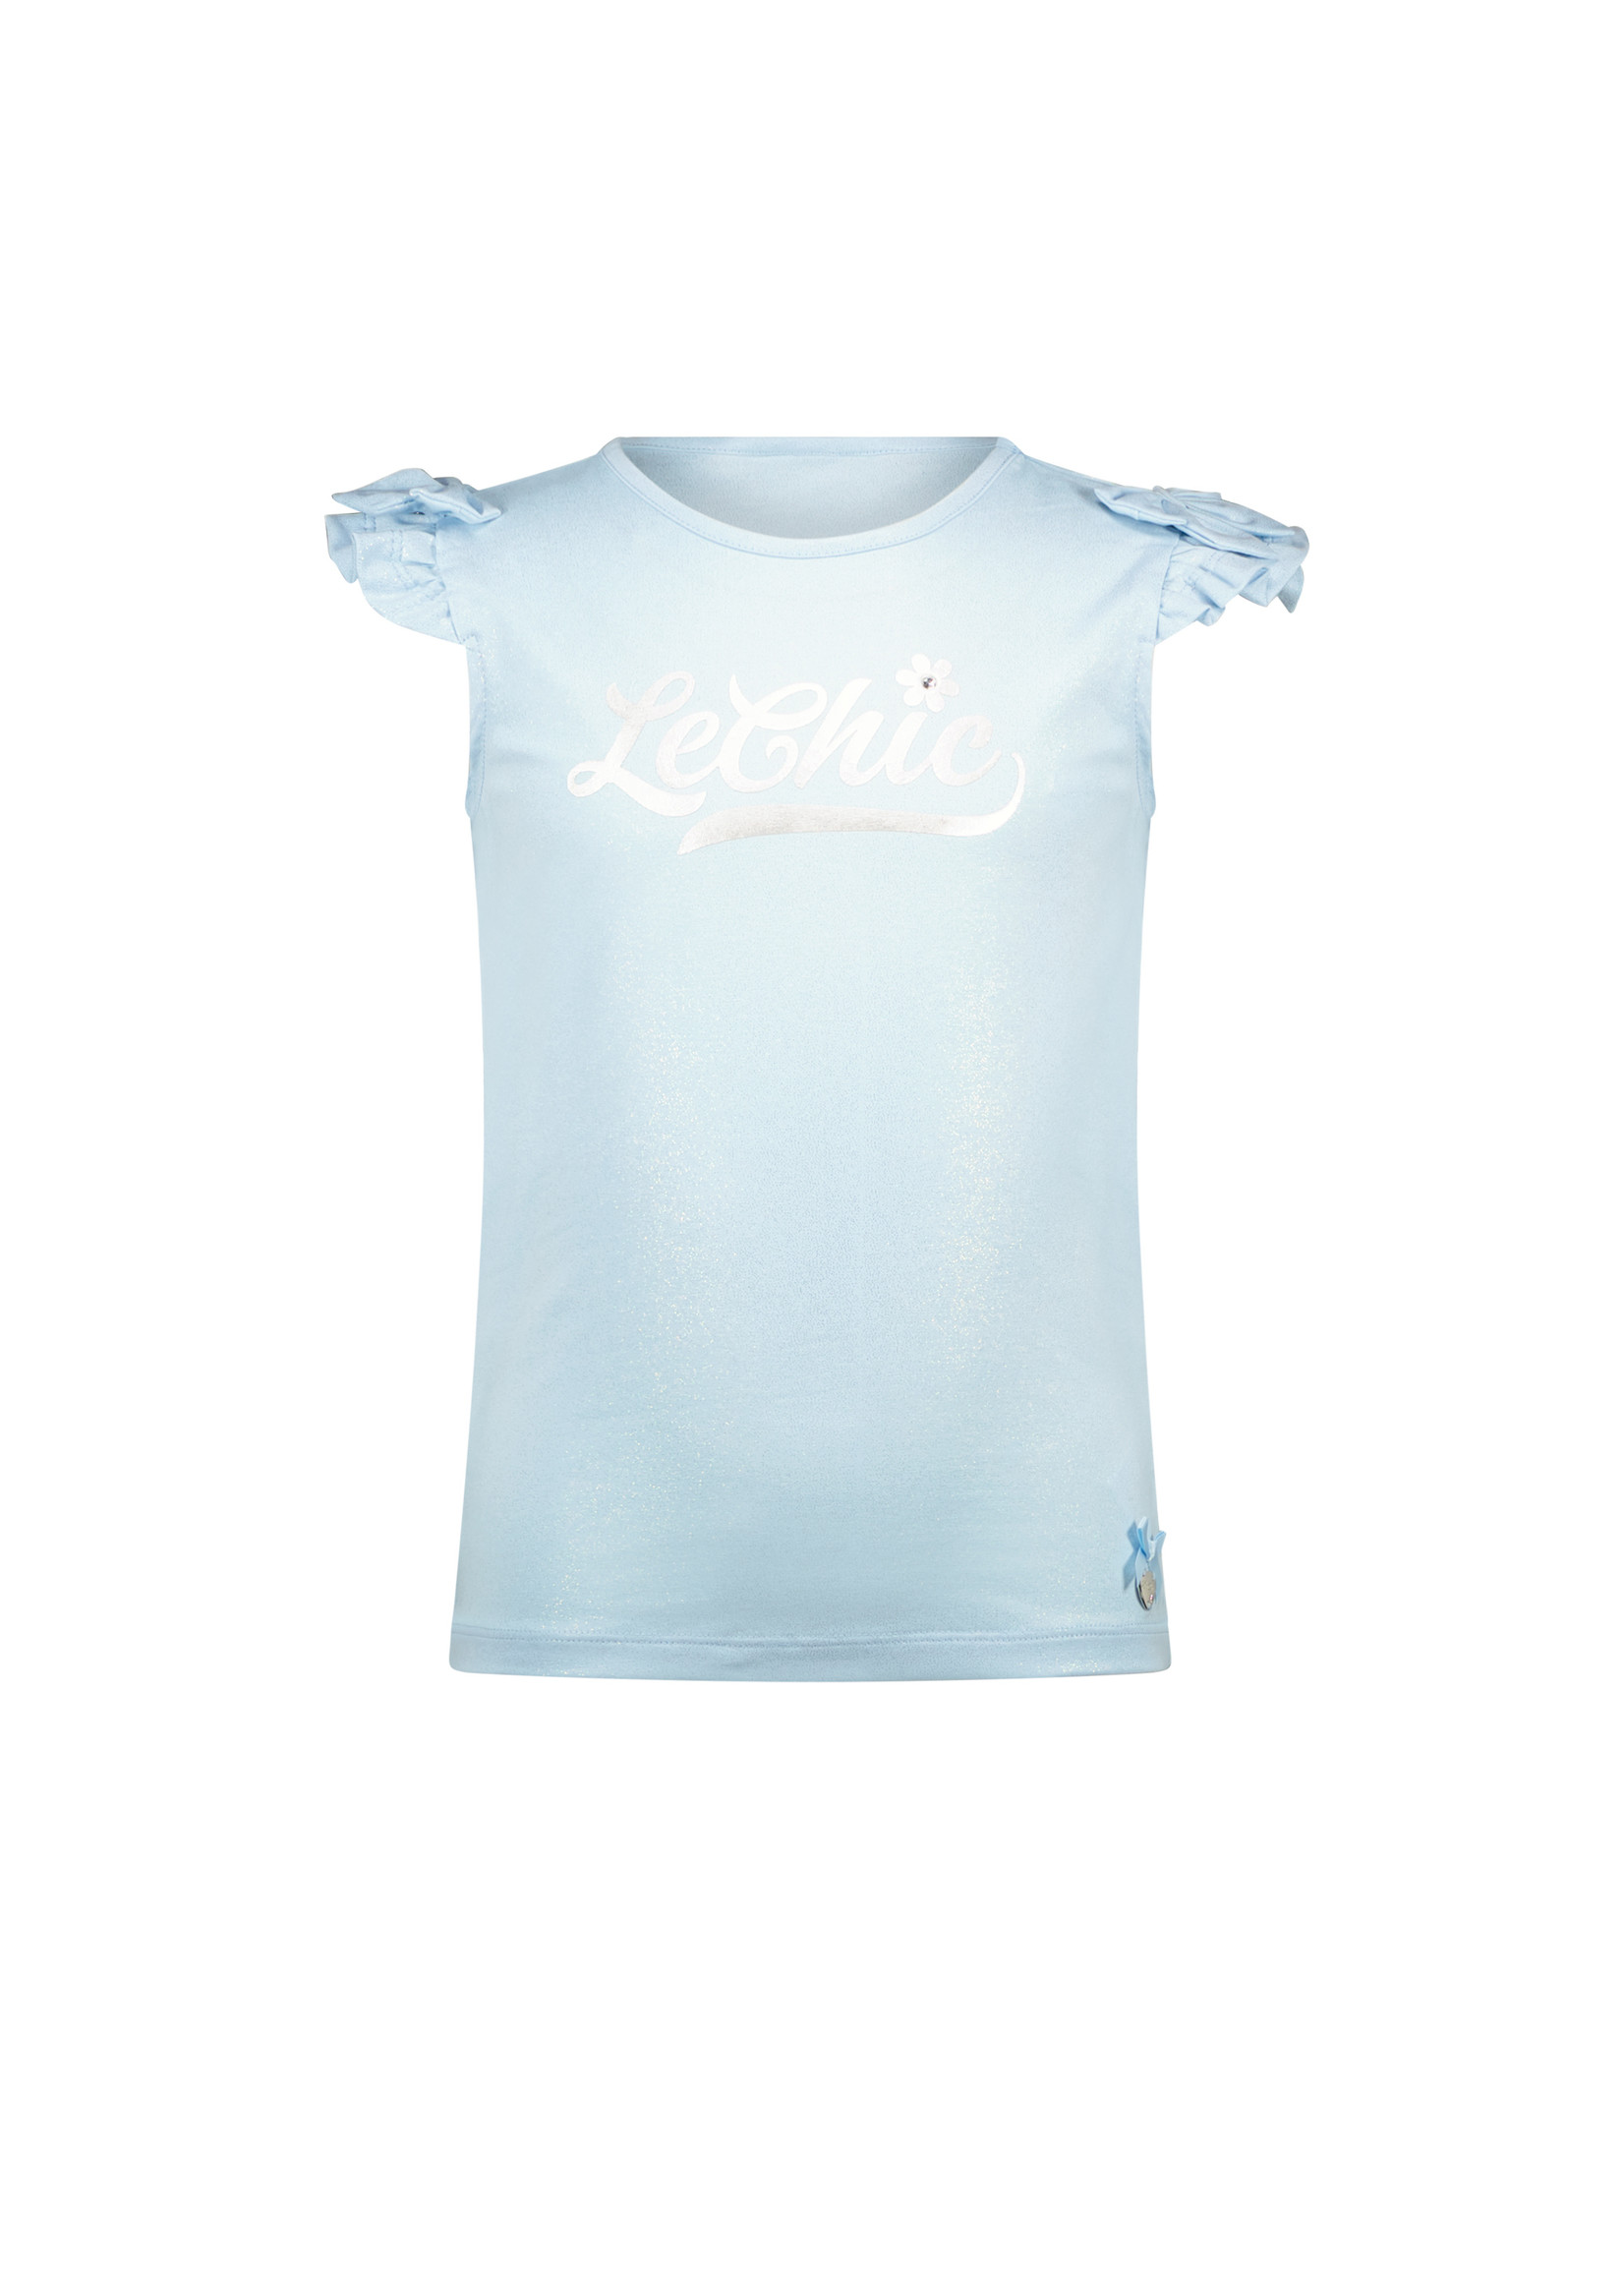 Le Chic NEM shoulderbow & logo T-shirt Song Sung Blue